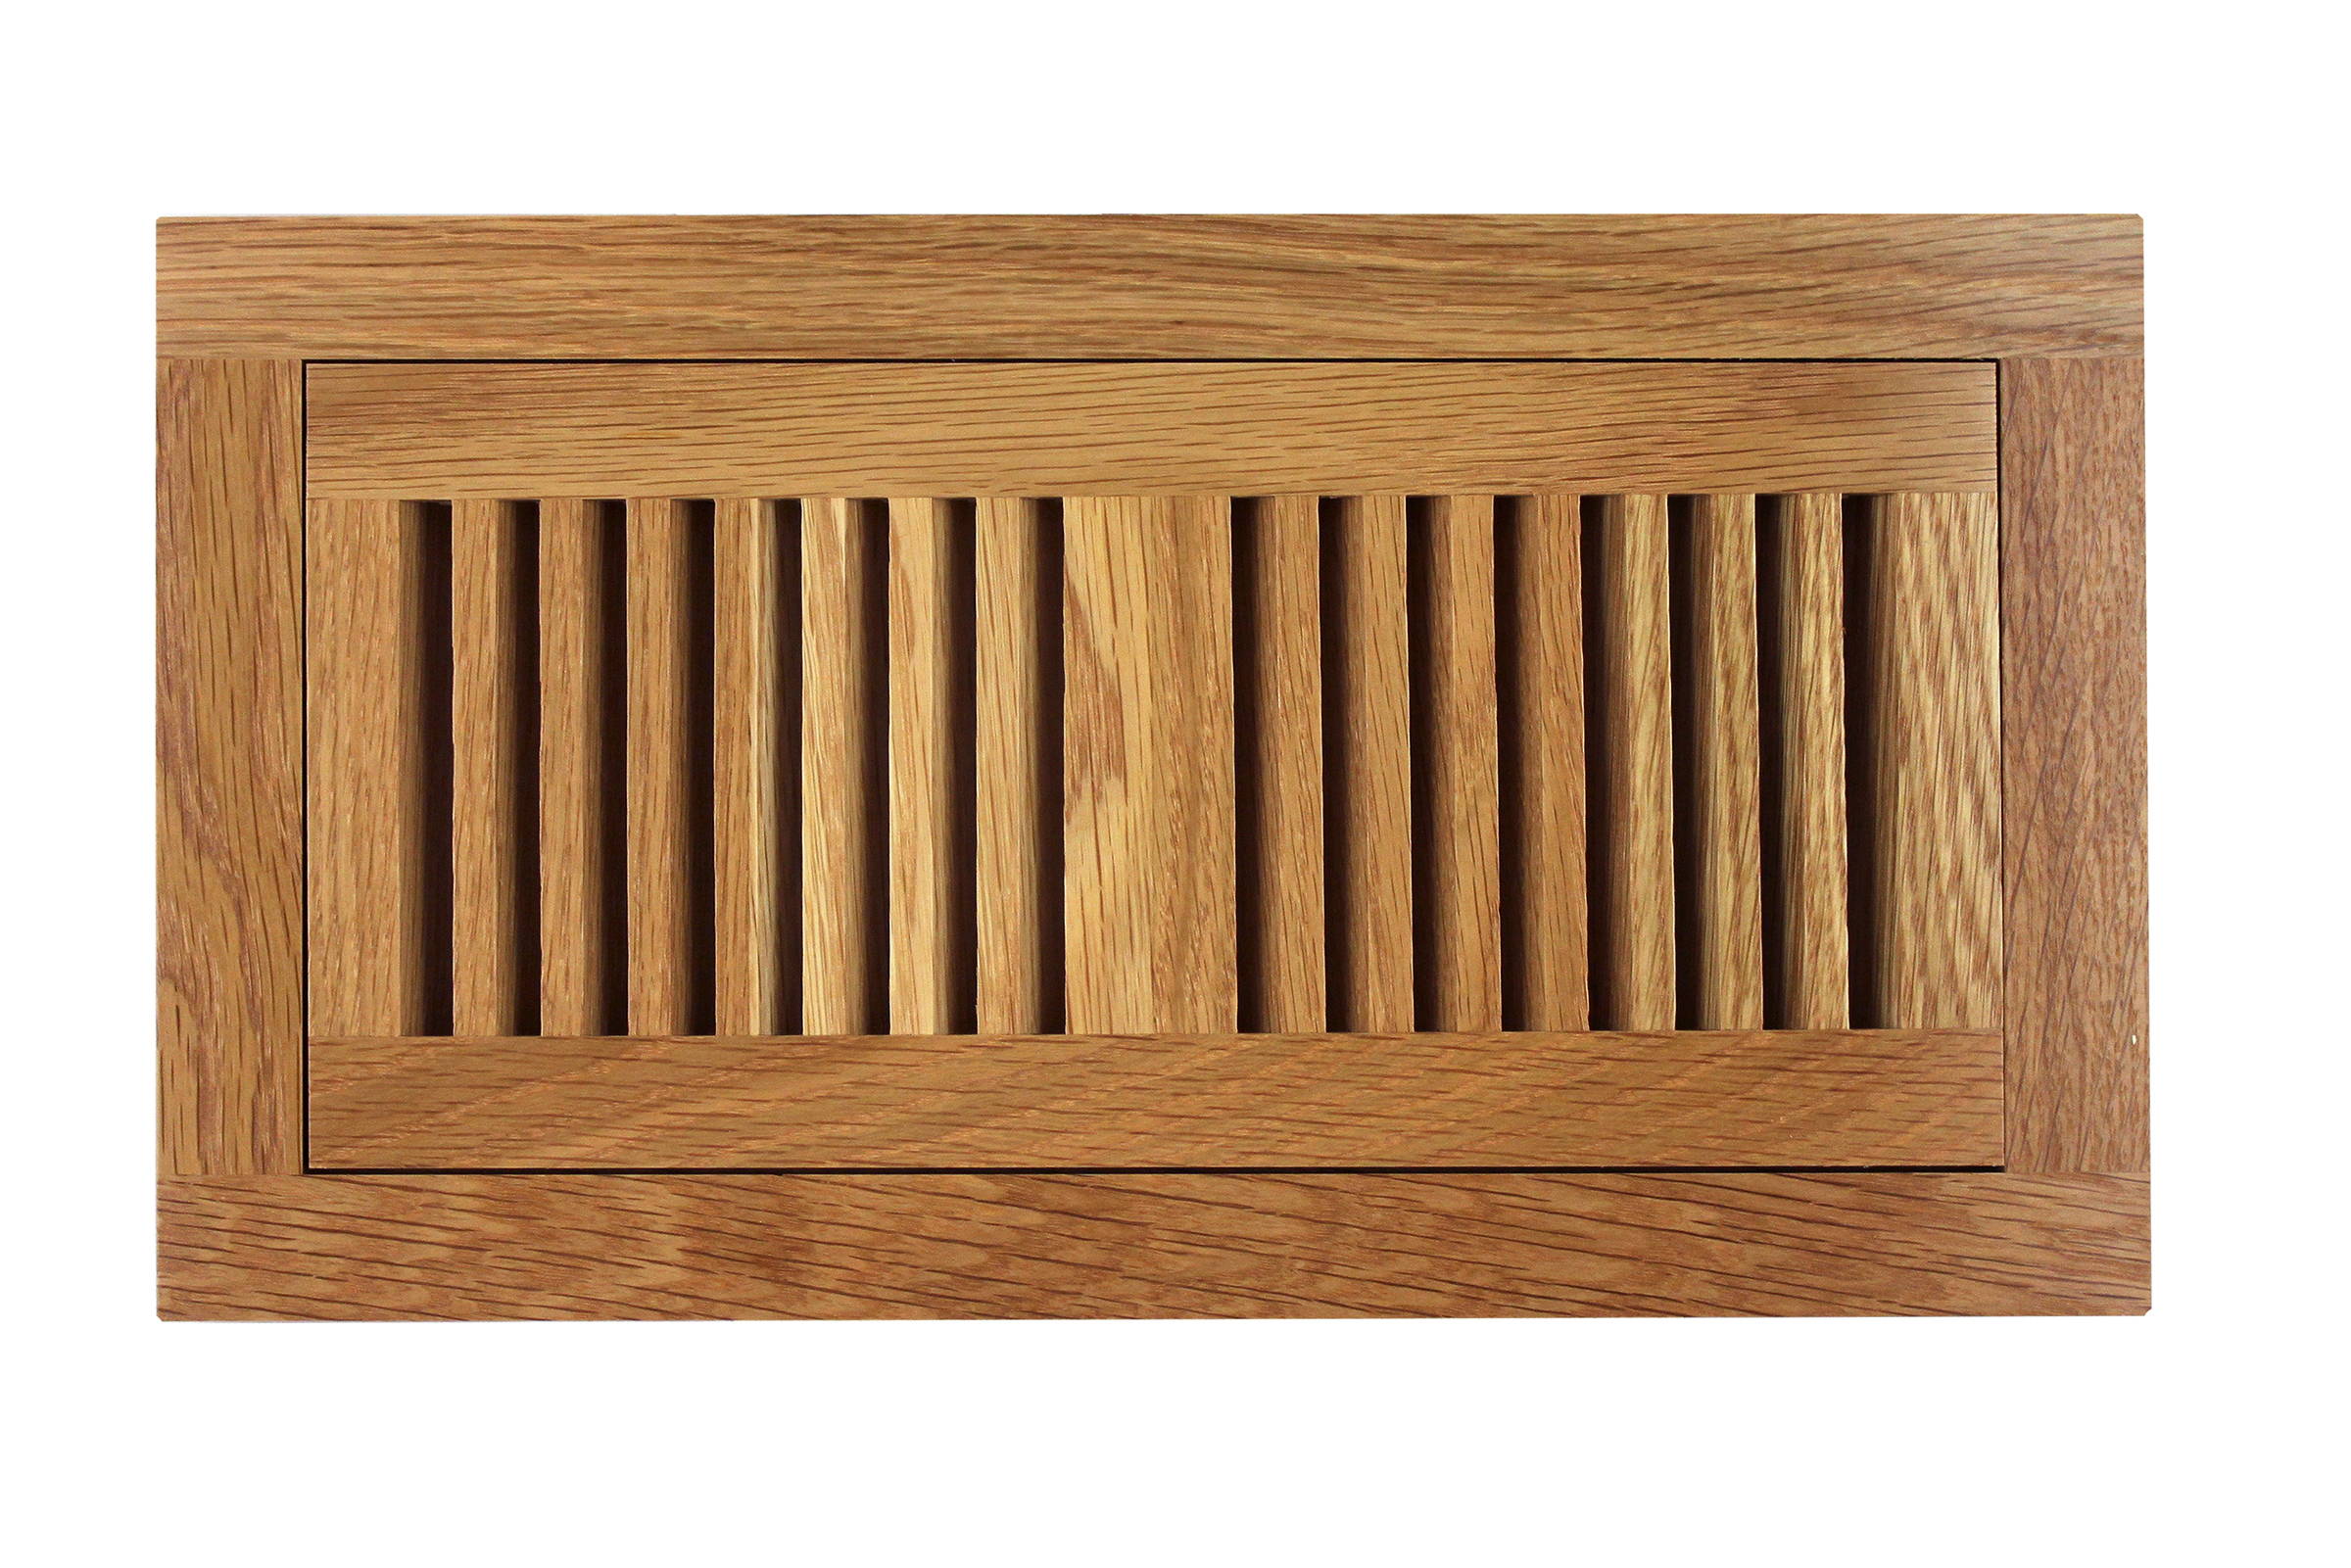 Lot of 3 Decor-Grates-Wood-Floor-Register-Air-Vent-Solid Oak Natural 4x14 NEW 